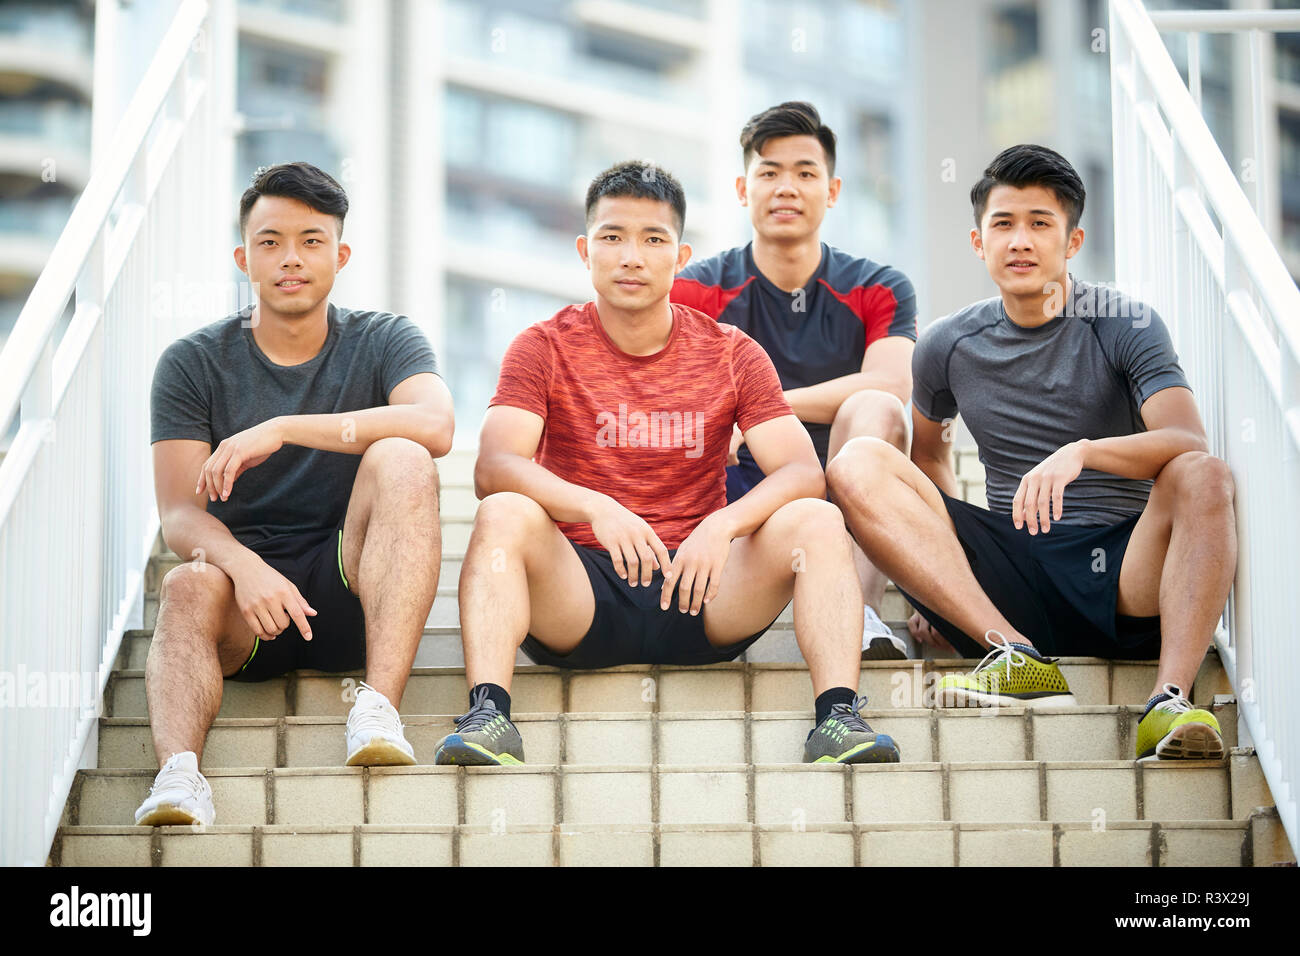 Portrait en extérieur d'une équipe de quatre jeunes athlètes asiatiques sitting on steps Banque D'Images